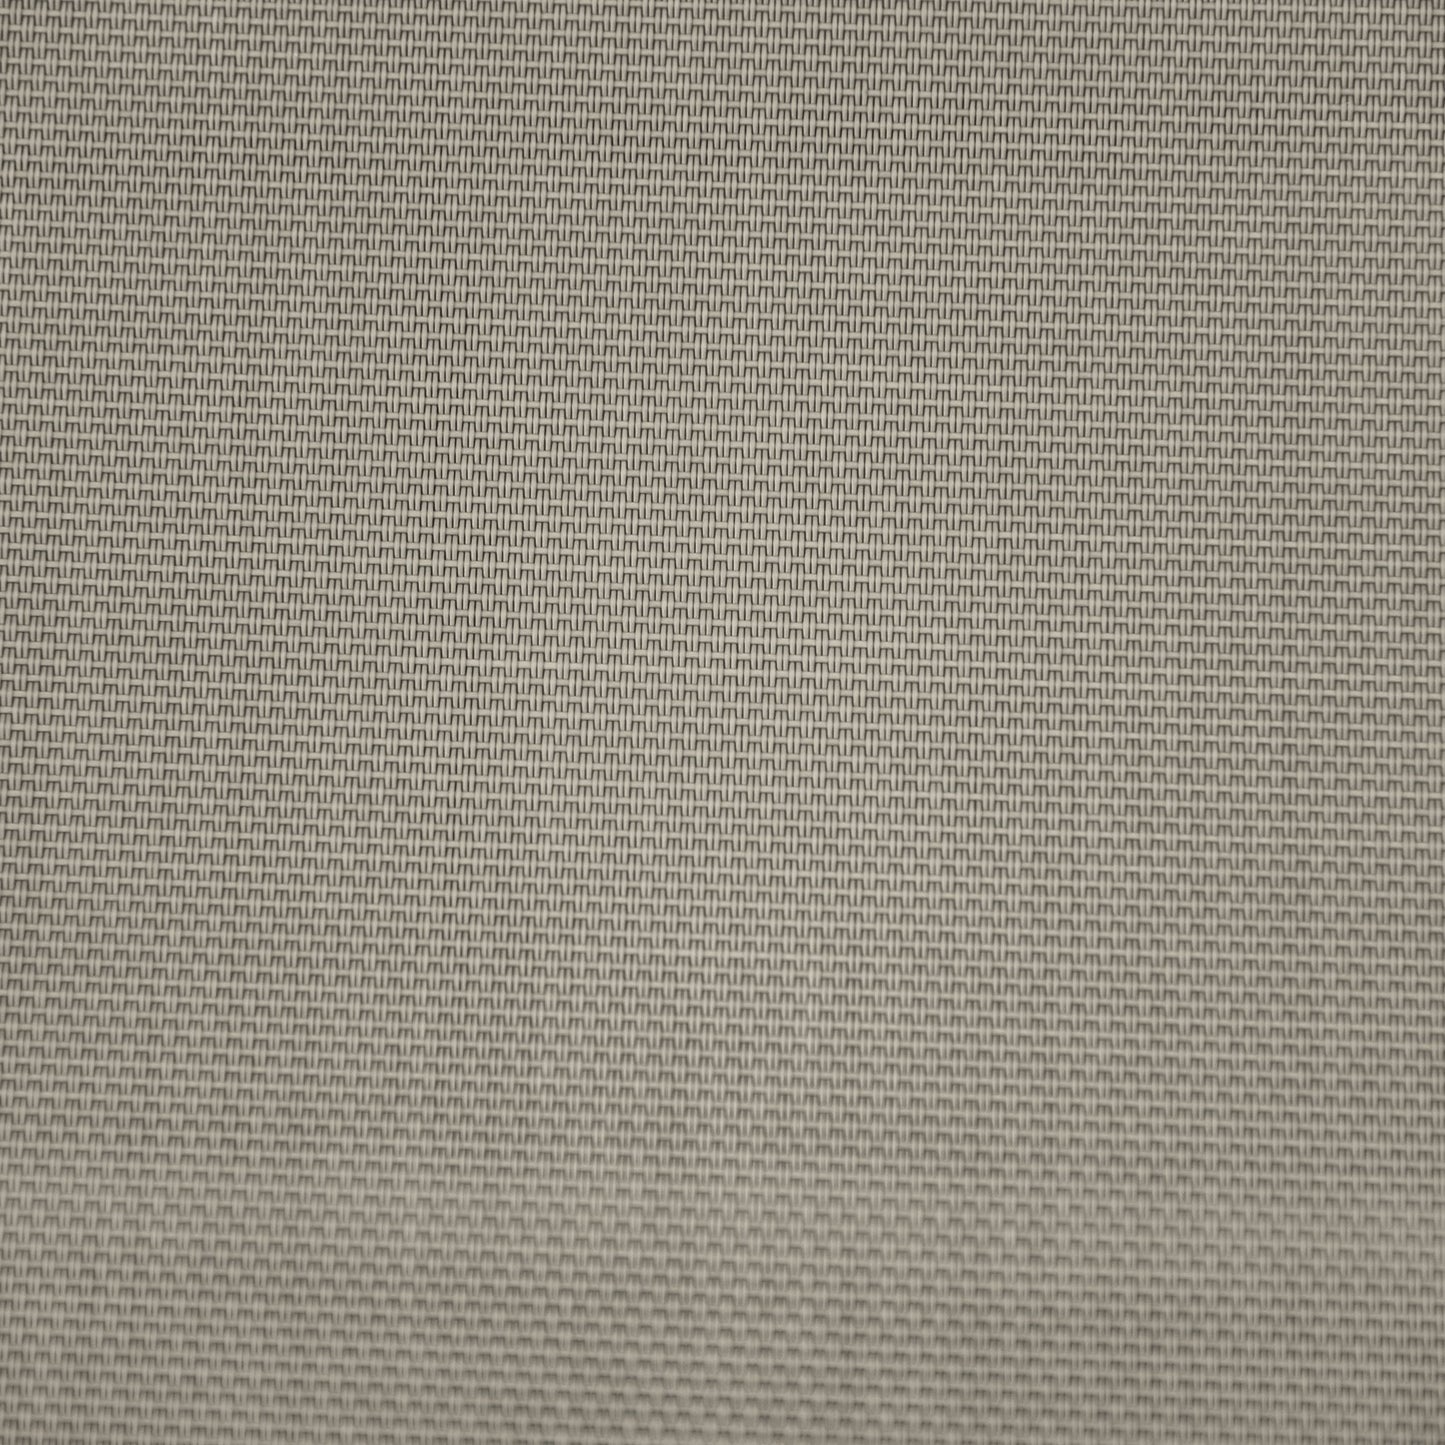 Nancy's Fort Myers Garden Chair - Lounger - Aluminum - Silver White/Light Gray - 165 x 61 x 63 cm